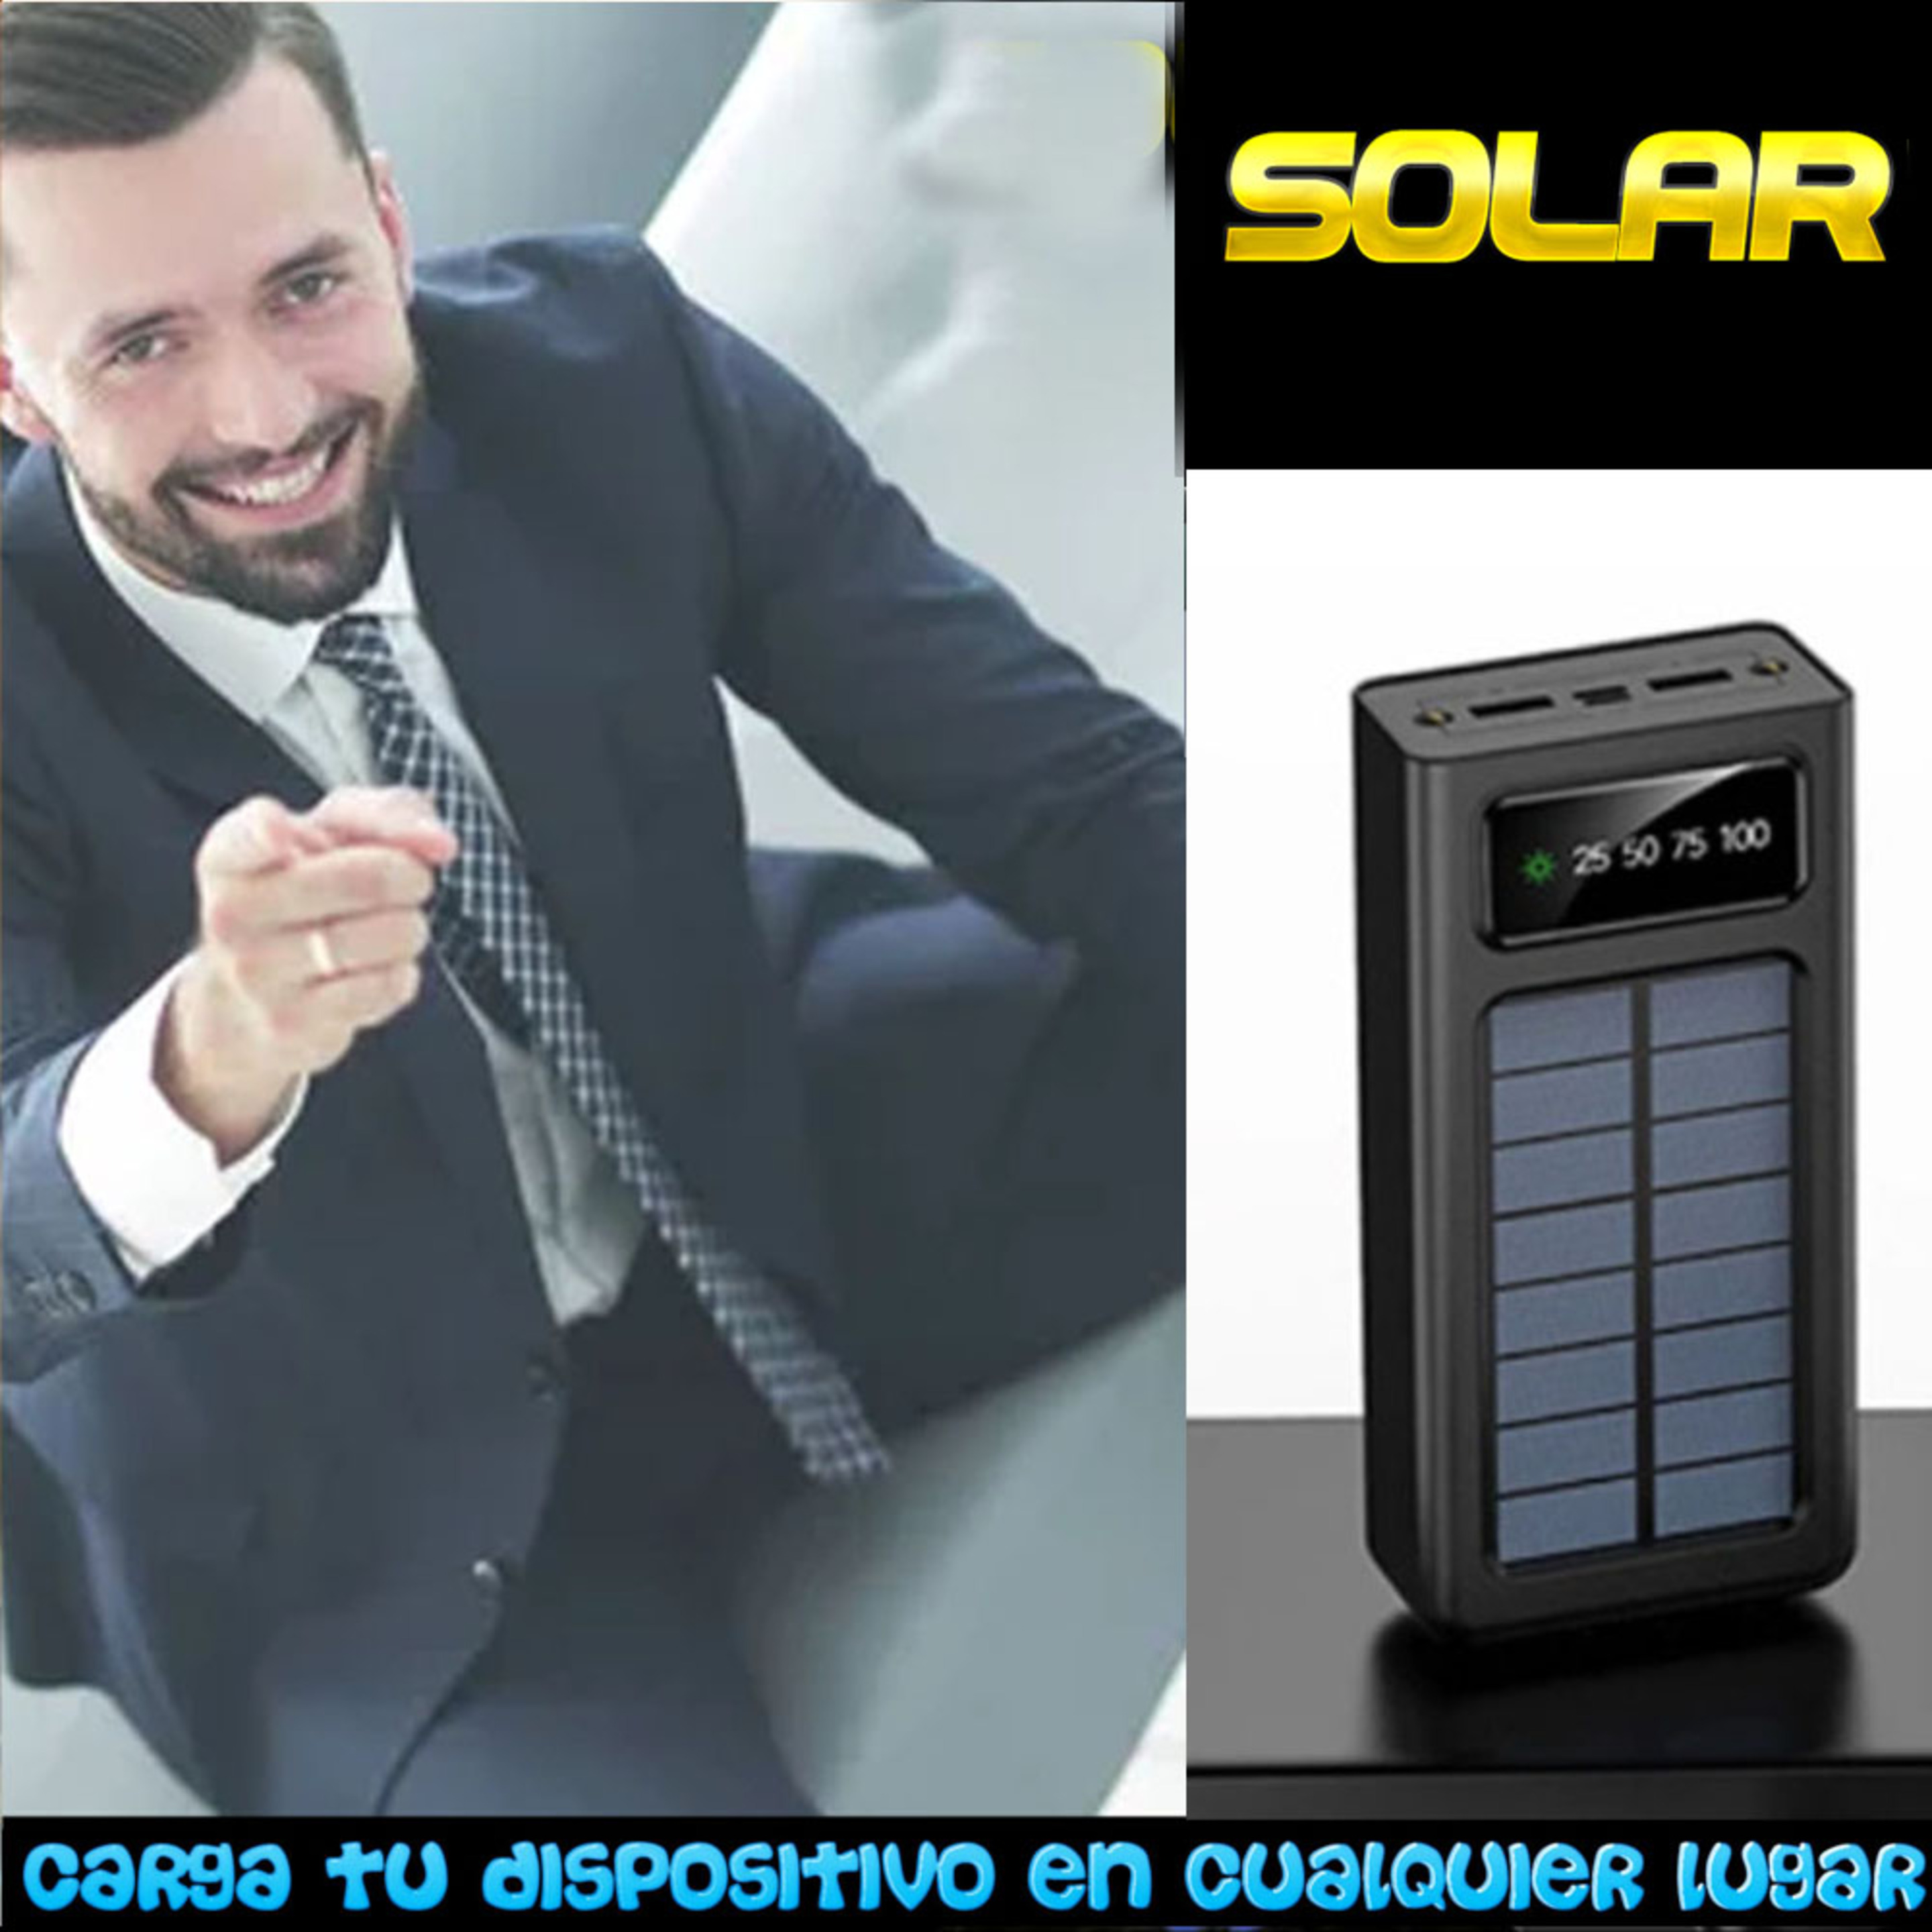 Carregador Solar 10000 Mah Para Telefone Movil Smartwatch Fones De Ouvido